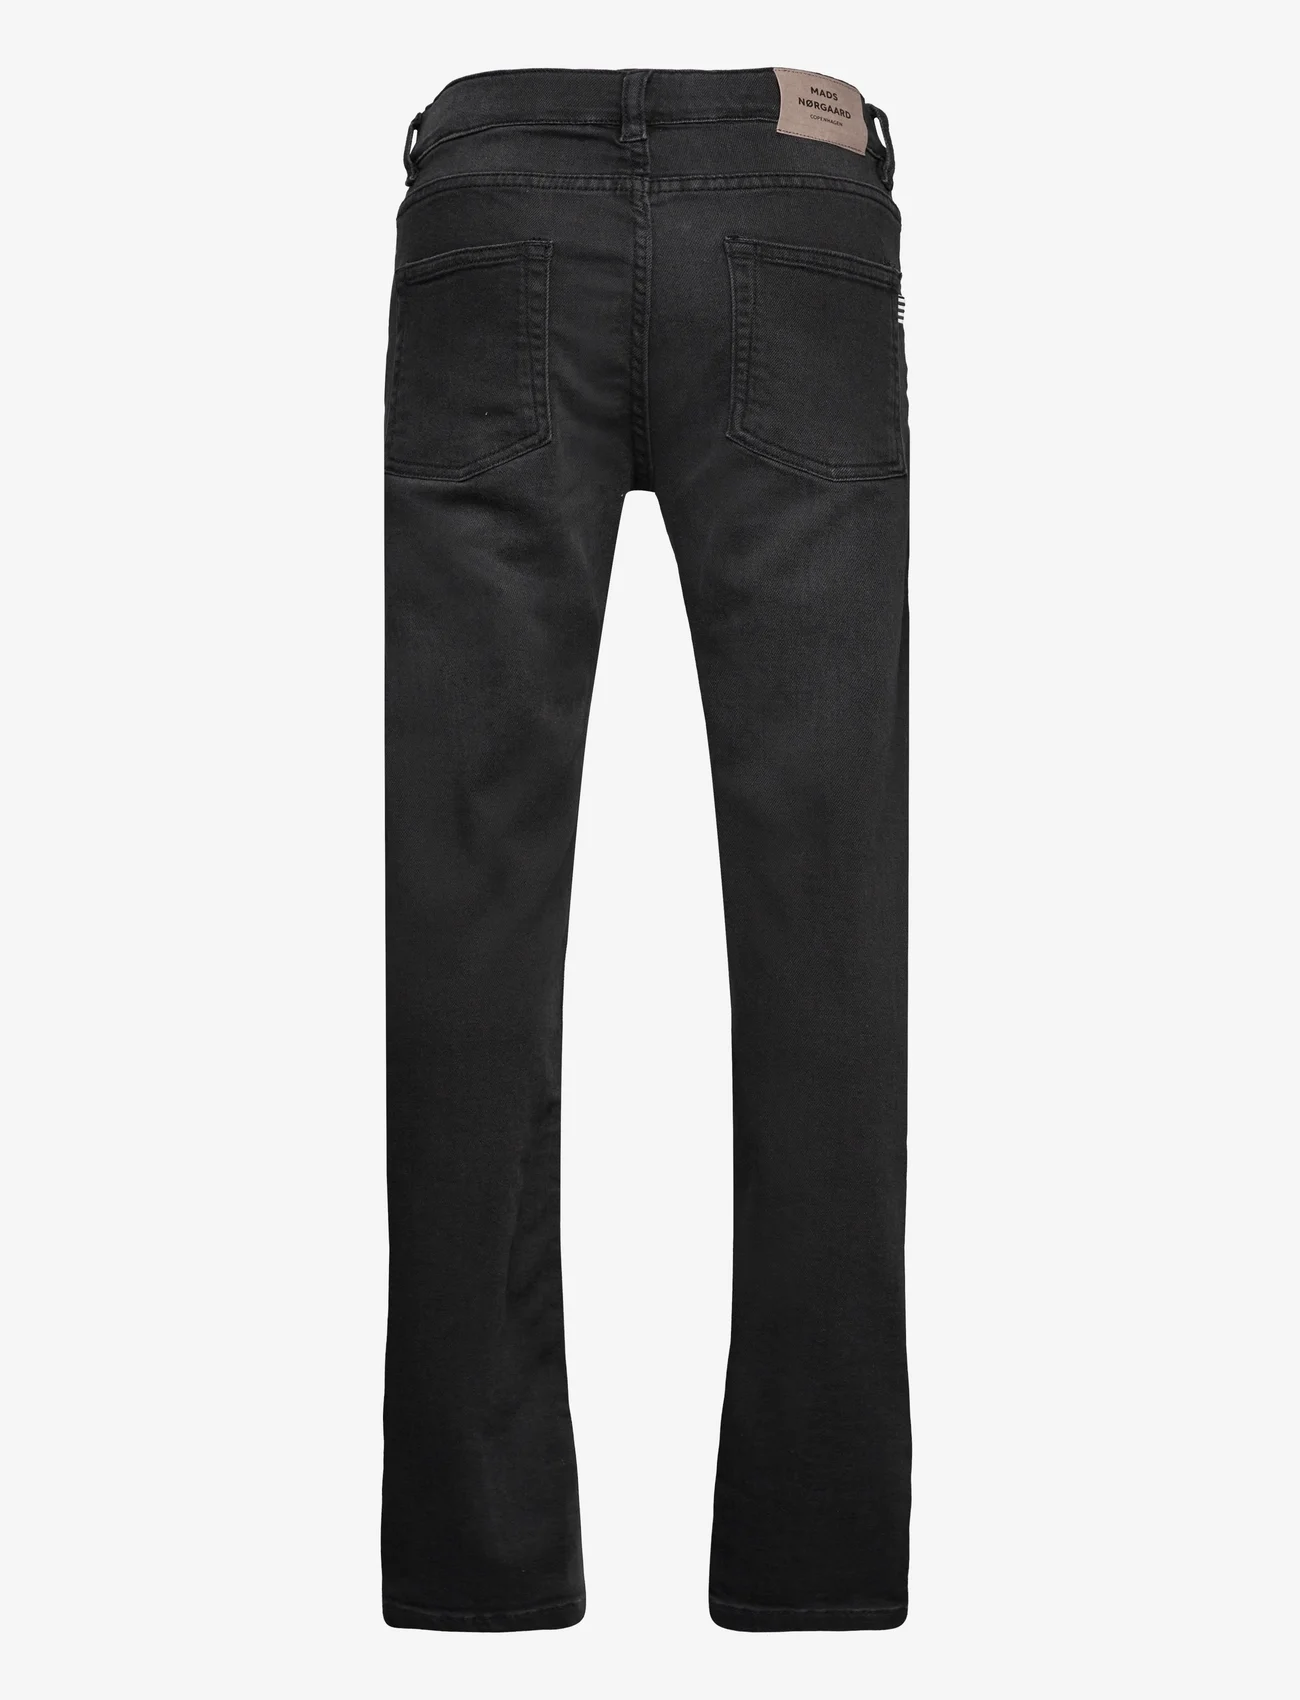 Mads Nørgaard - Washed Black / Black Jagino Pants - regular jeans - washed black - 1